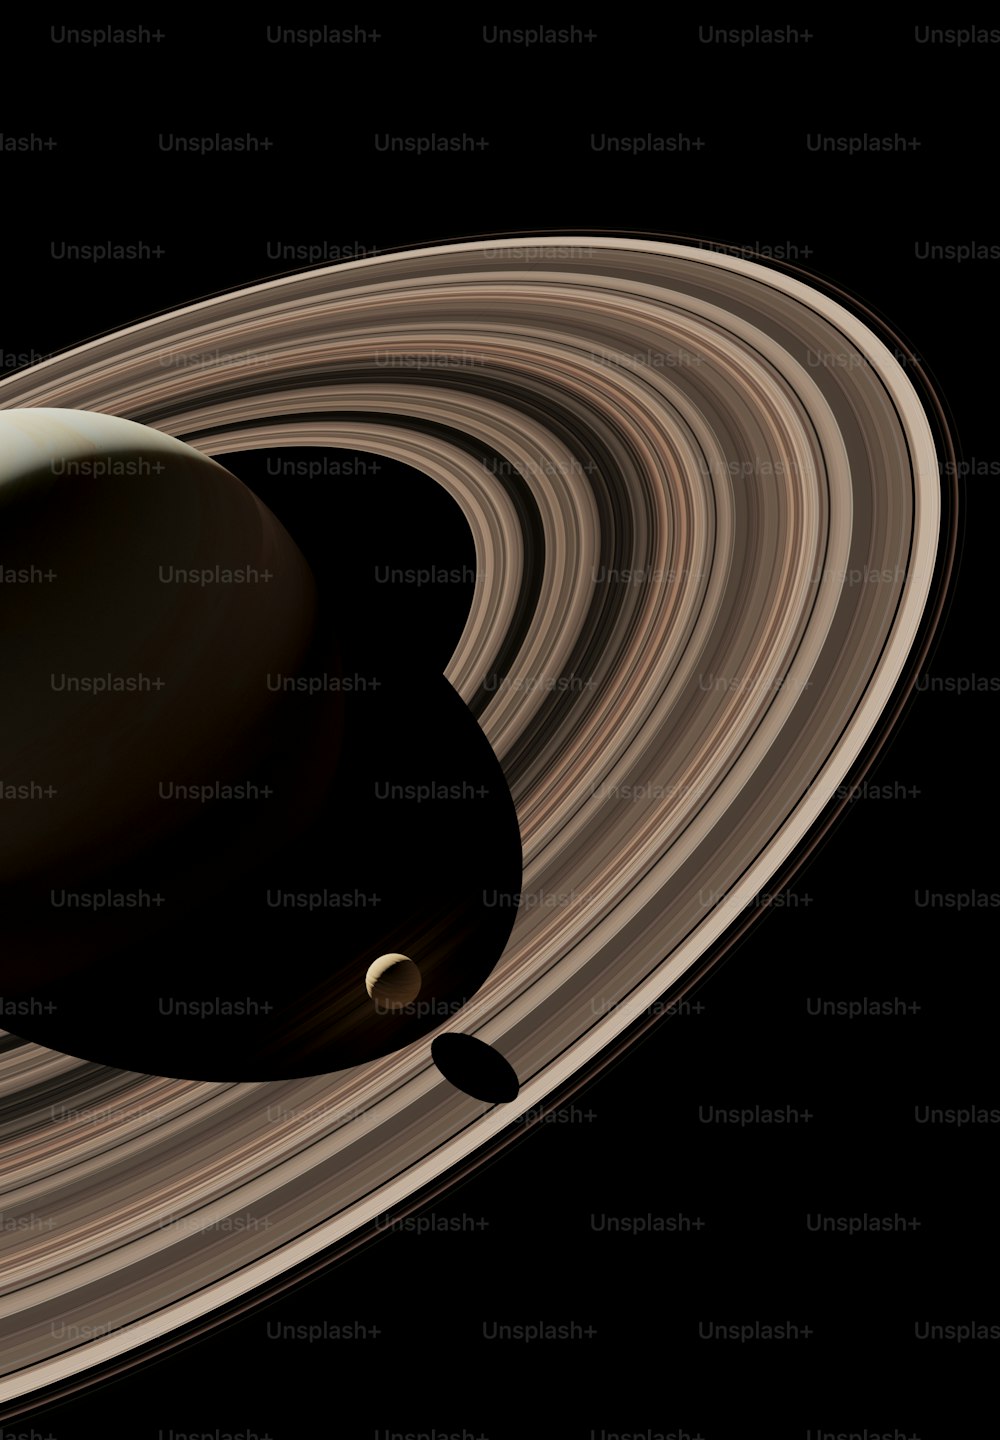 土星とその環のアーティストによるレンダリング